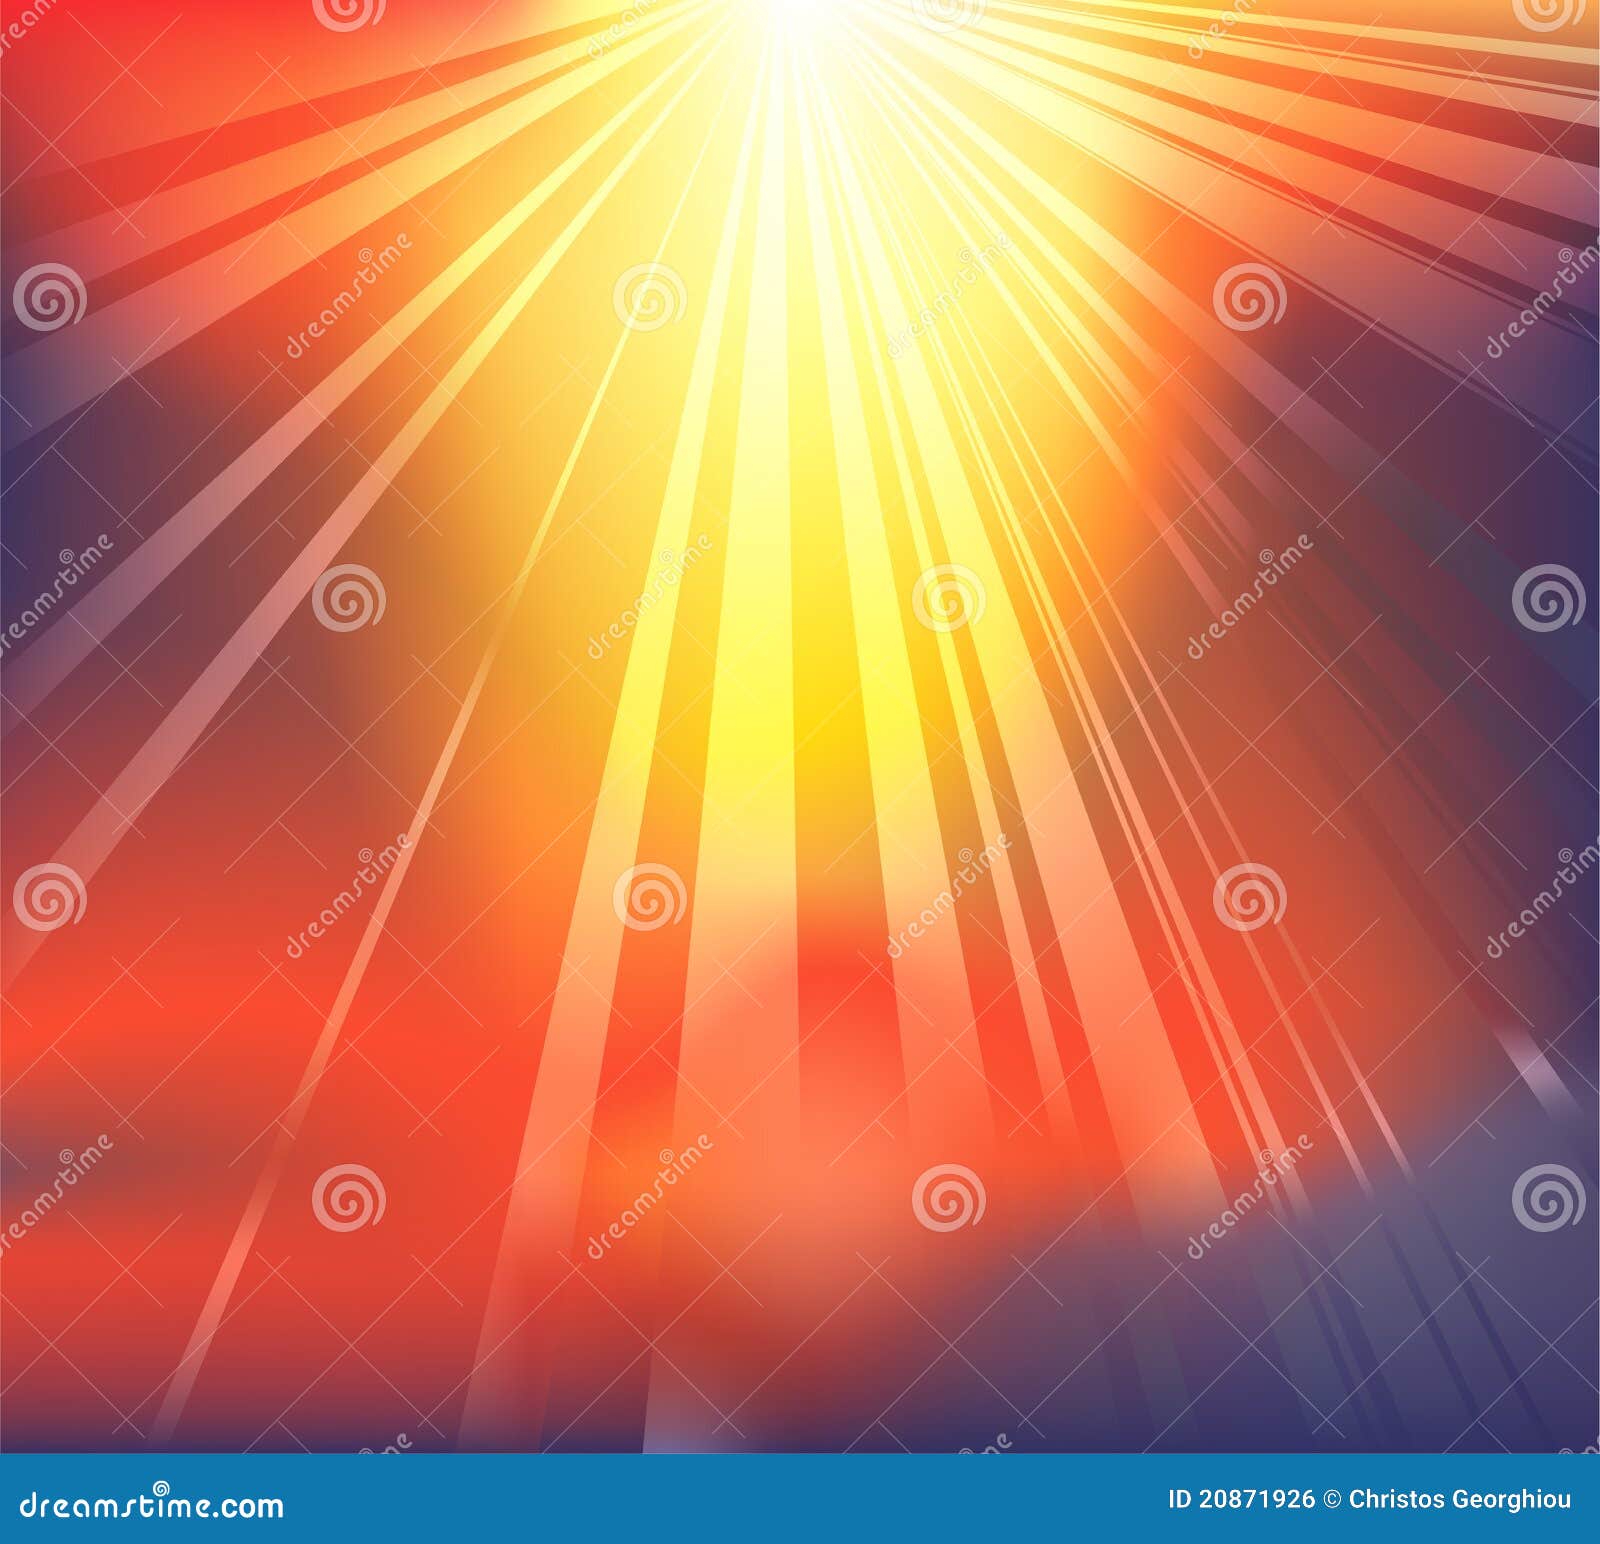 Heavenly light background stock vector. Illustration of spot - 20871926